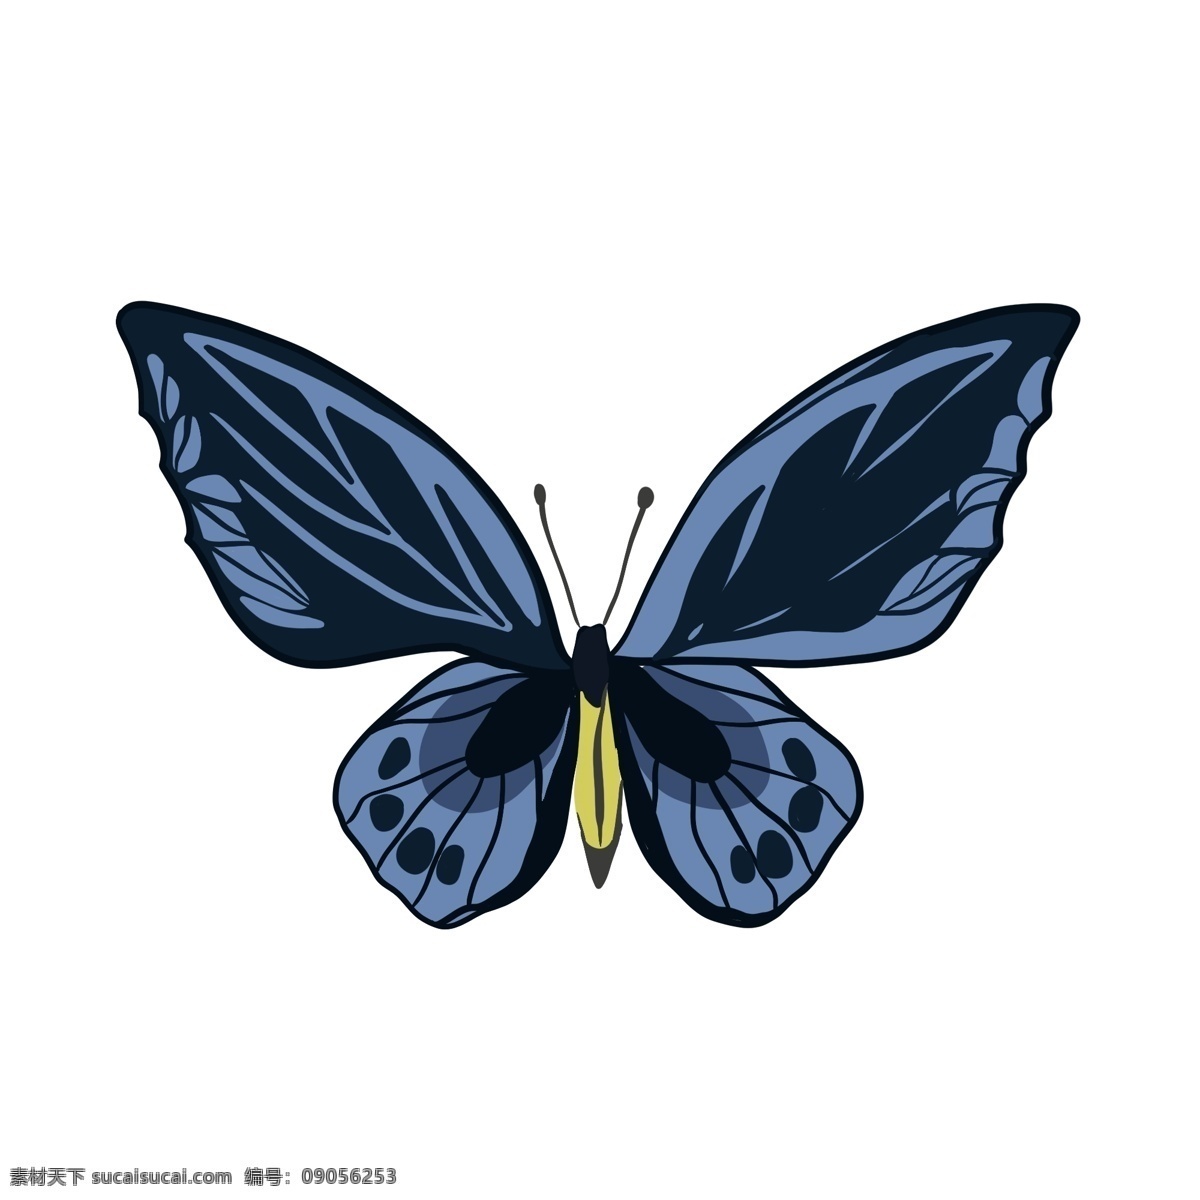 蓝黑色 蝴蝶 手绘 飞蛾 动物 昆虫 装饰 翅膀 黑色 蓝色 纹理 触角 飞翔 飞行 小蝴蝶 可爱 形象